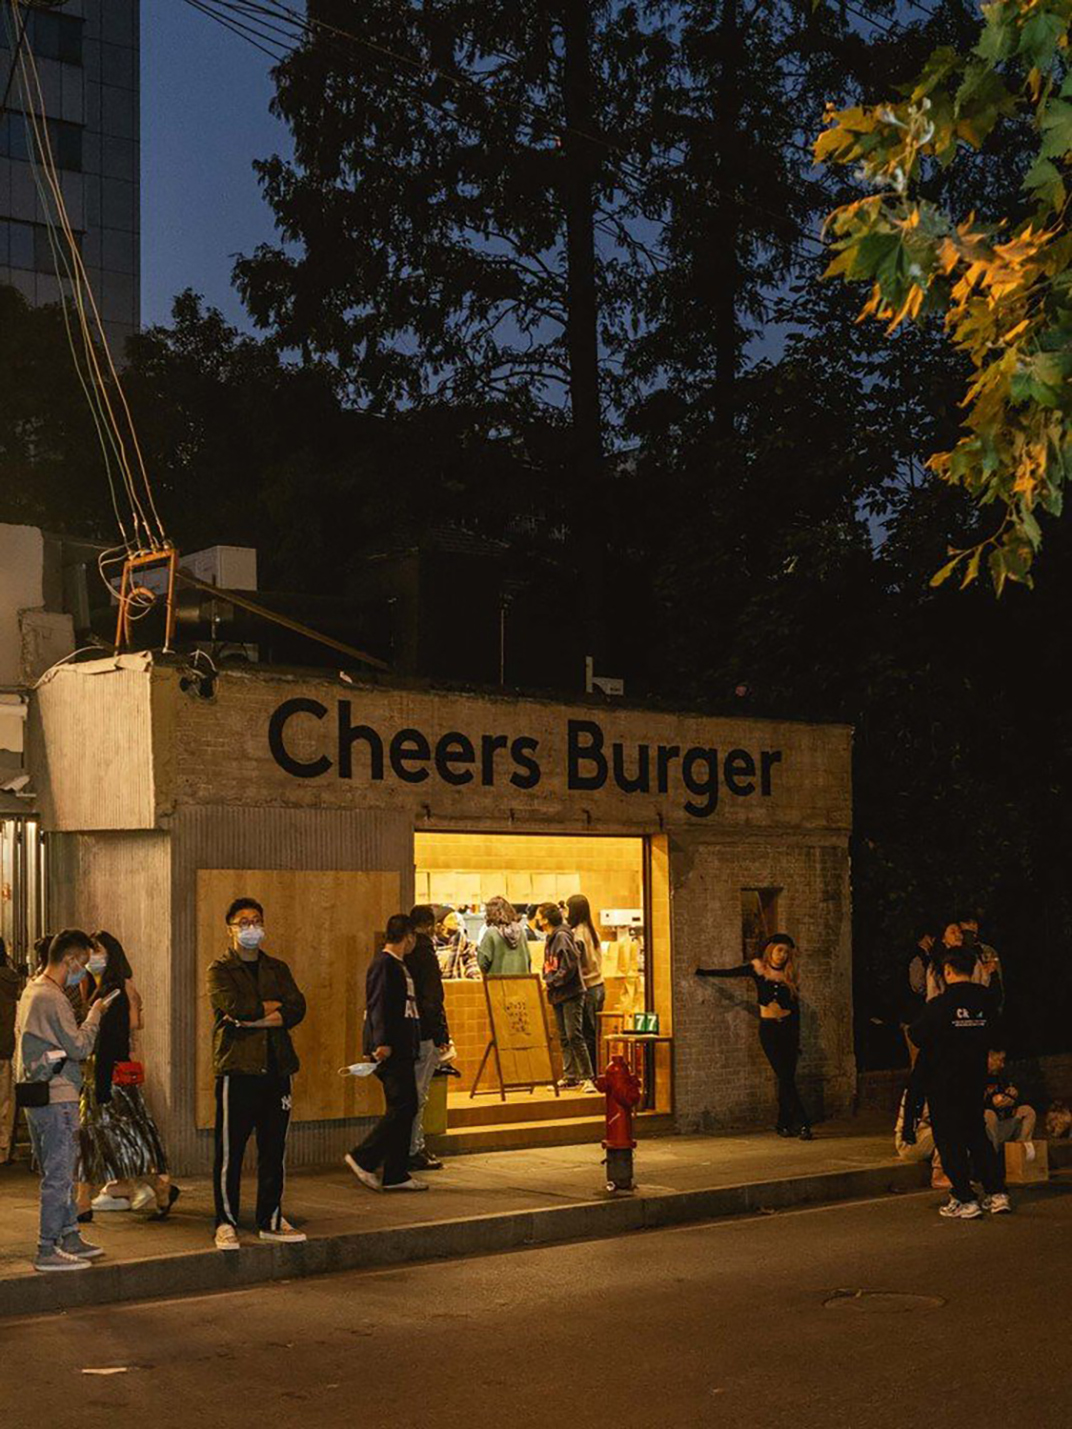 汉堡餐厅Cheers Burger 上海 珠海 成都 武汉 杭州 广州 香港 澳门 logo设计 vi设计 空间设计